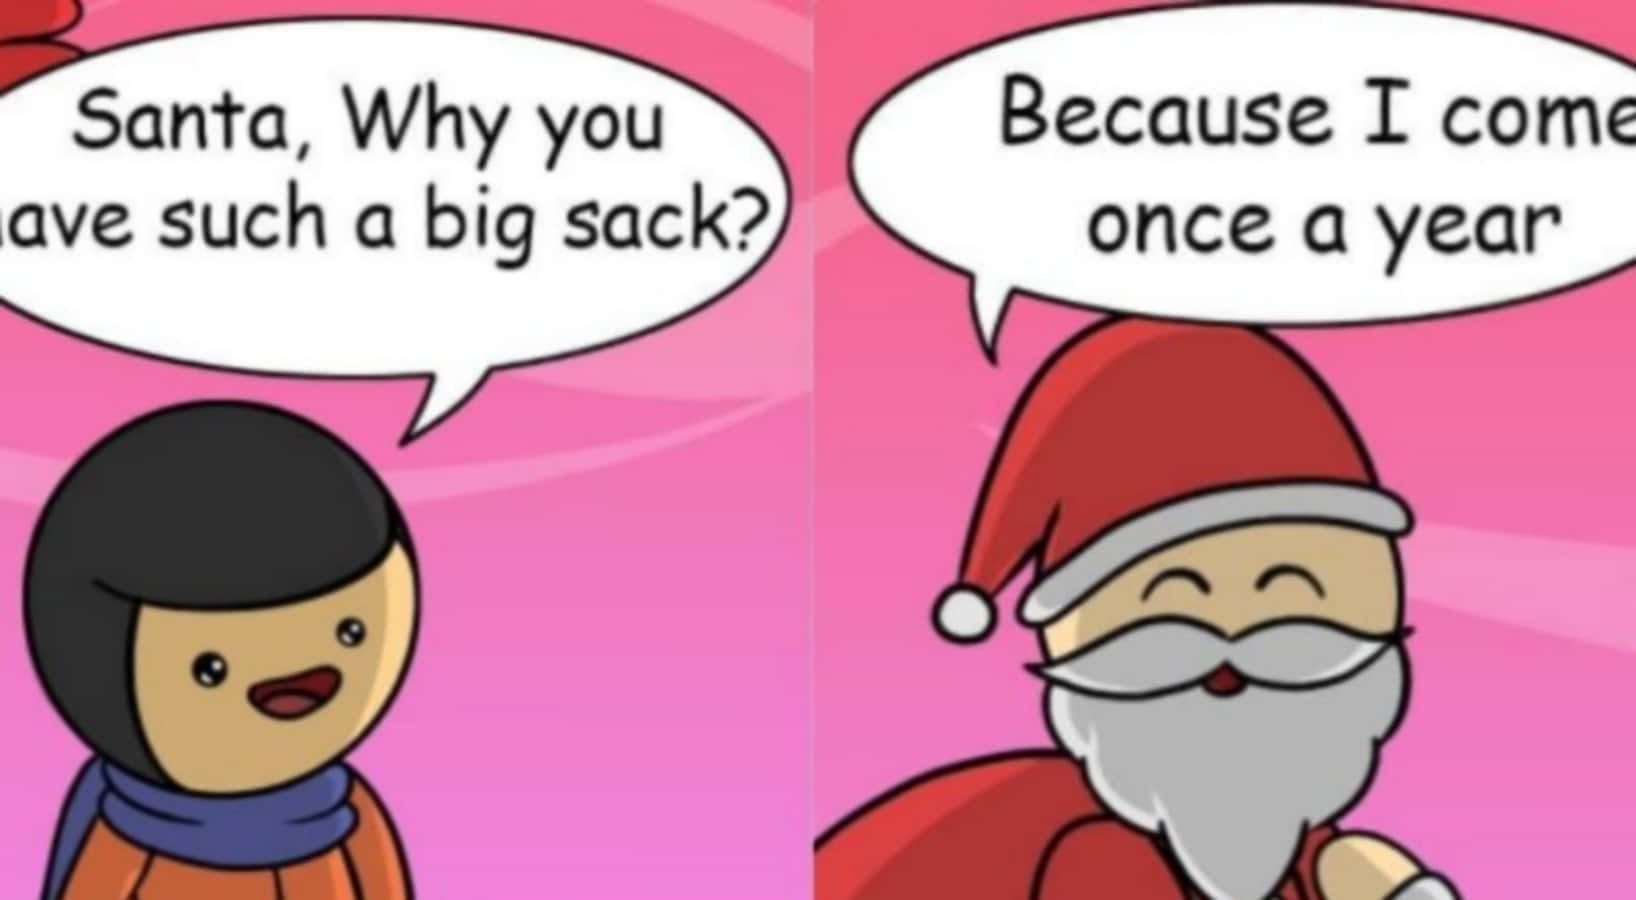 Santaclaus Y Santa Claus Están Hablando Sobre La Navidad.